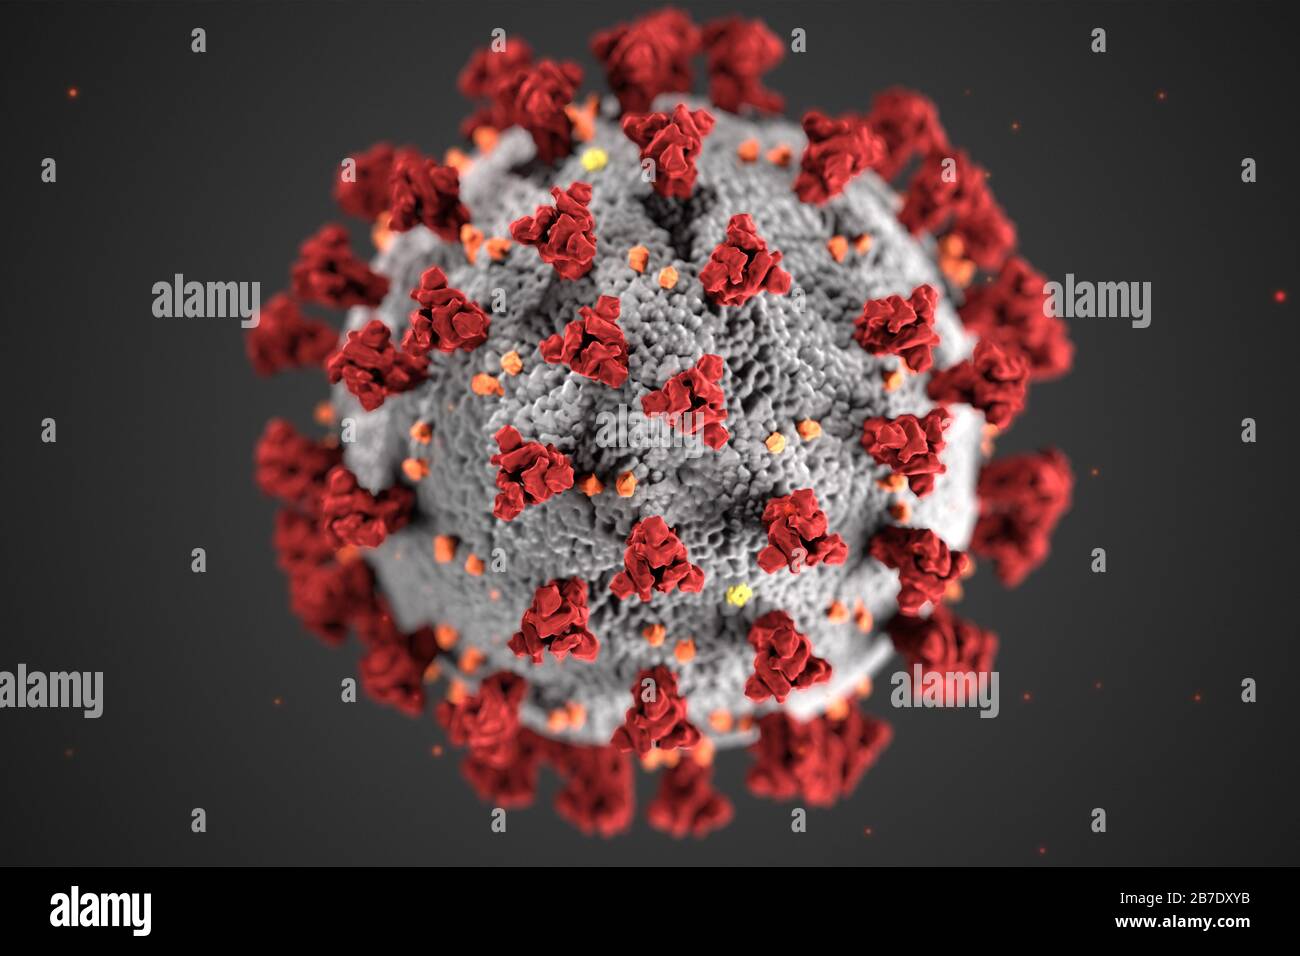 Cette illustration, créée dans les centres de contrôle et de prévention des maladies (CDC), révèle la morphologie ultrastructurale des coronavirus. Notez les pics qui ornent la surface externe du virus, qui donnent l'aspect d'un corona entourant le virion lorsqu'on regarde l'électron microscopiquement. Un nouveau coronavirus, appelé syndrome respiratoire aigu Sévère coronavirus 2 (SRAS-COV-2), a été identifié comme la cause d'une éclosion de maladie respiratoire détectée pour la première fois à Wuhan, en Chine, en 2019. La maladie causée par ce virus a été nommée coronavirus 2019 (COVID-19). Crédit: UPI/Al Banque D'Images